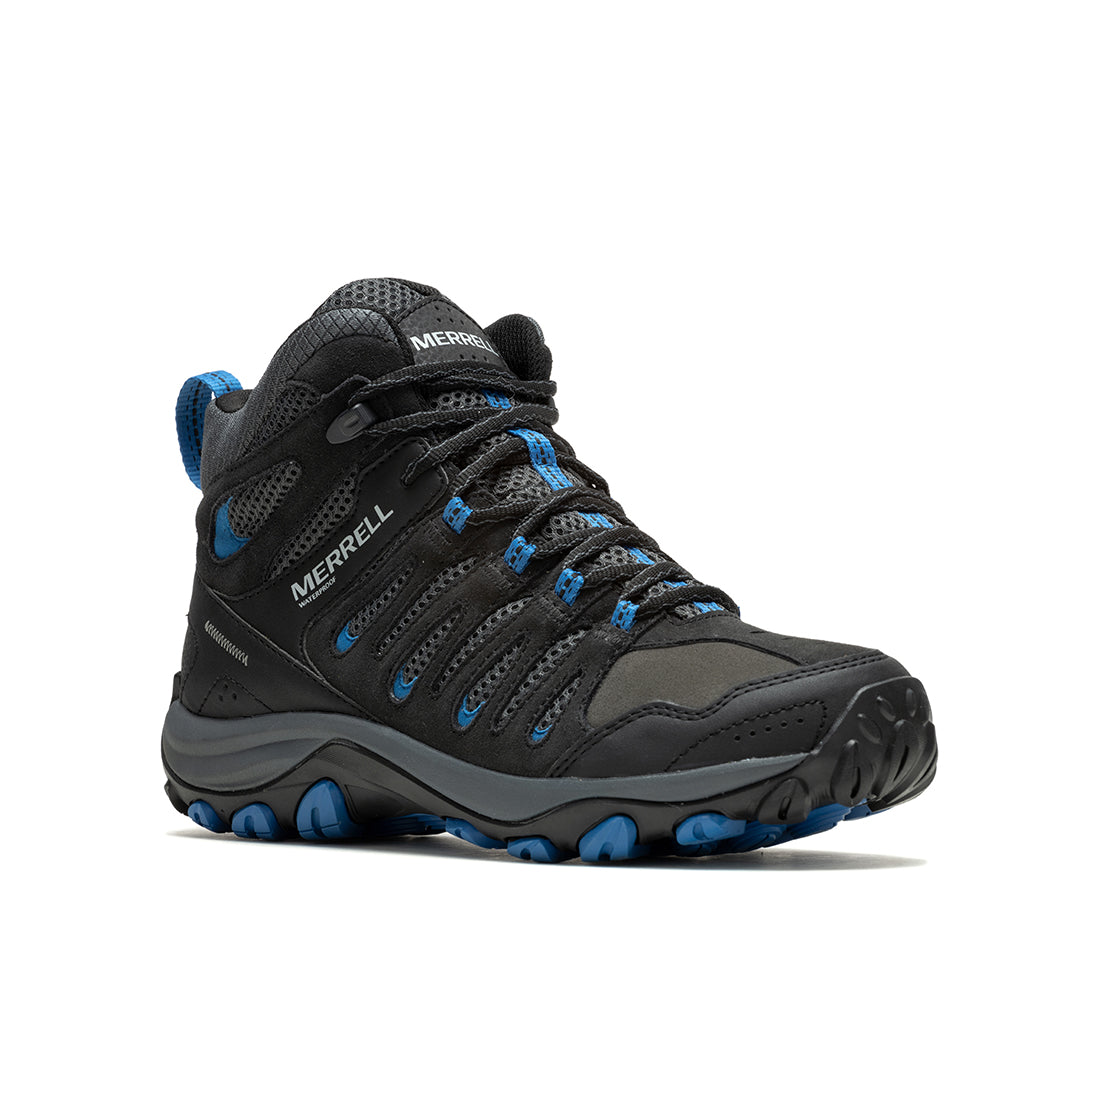 Crosslander 3 Mid Wprf - Black/Blue Mens Hiking Shoes